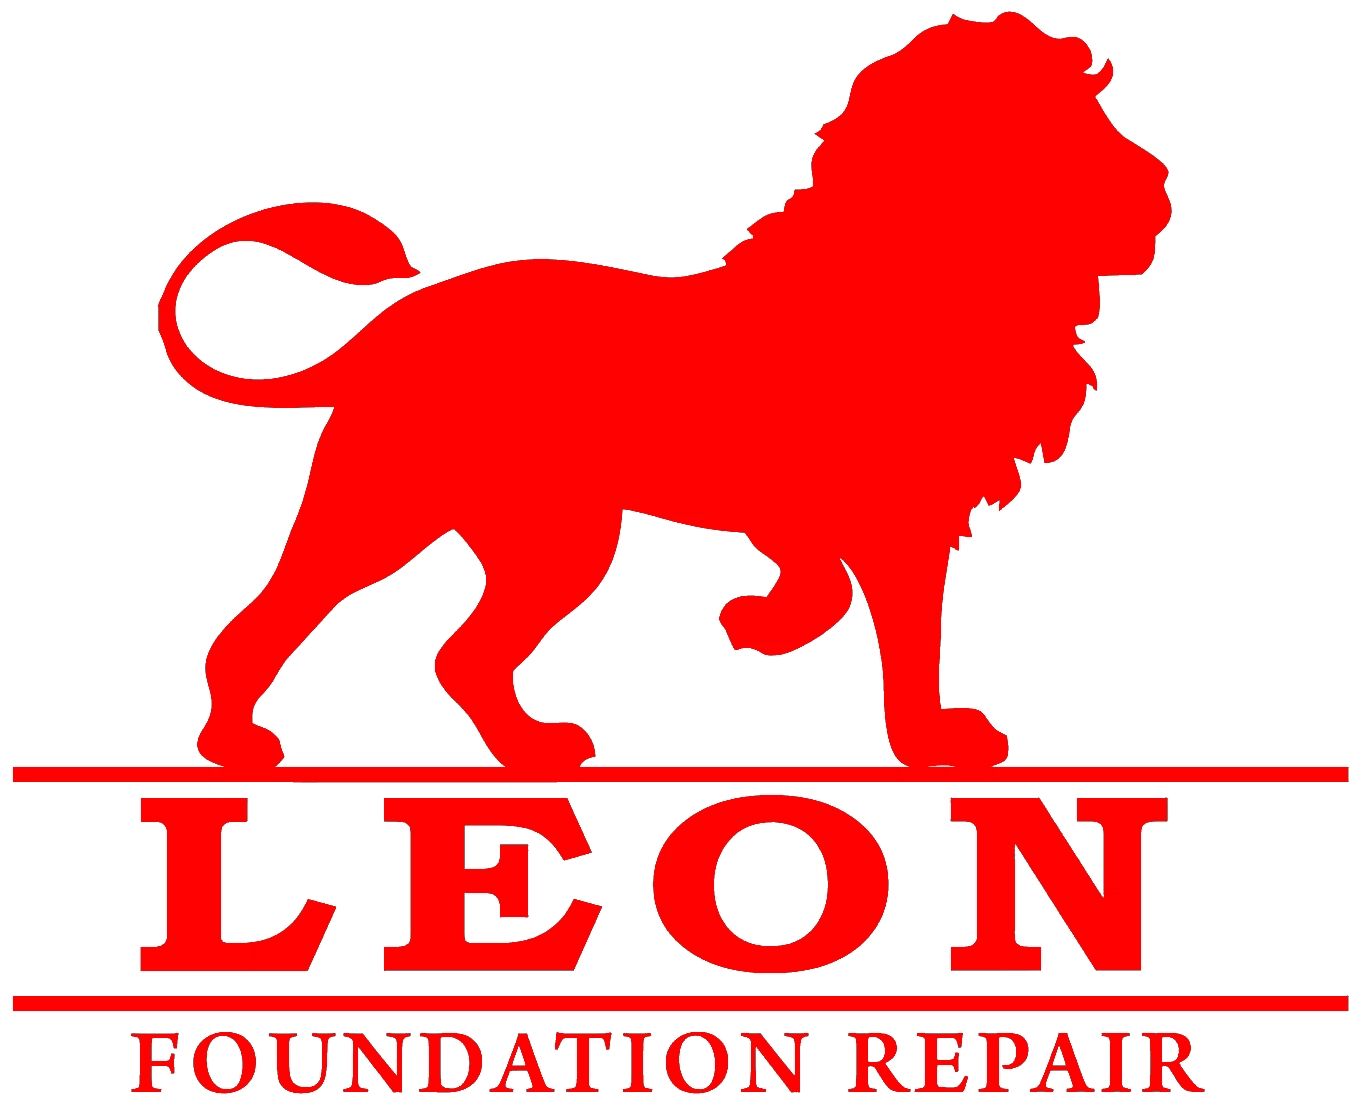 LEON FOUNDATION REPAIR Logo